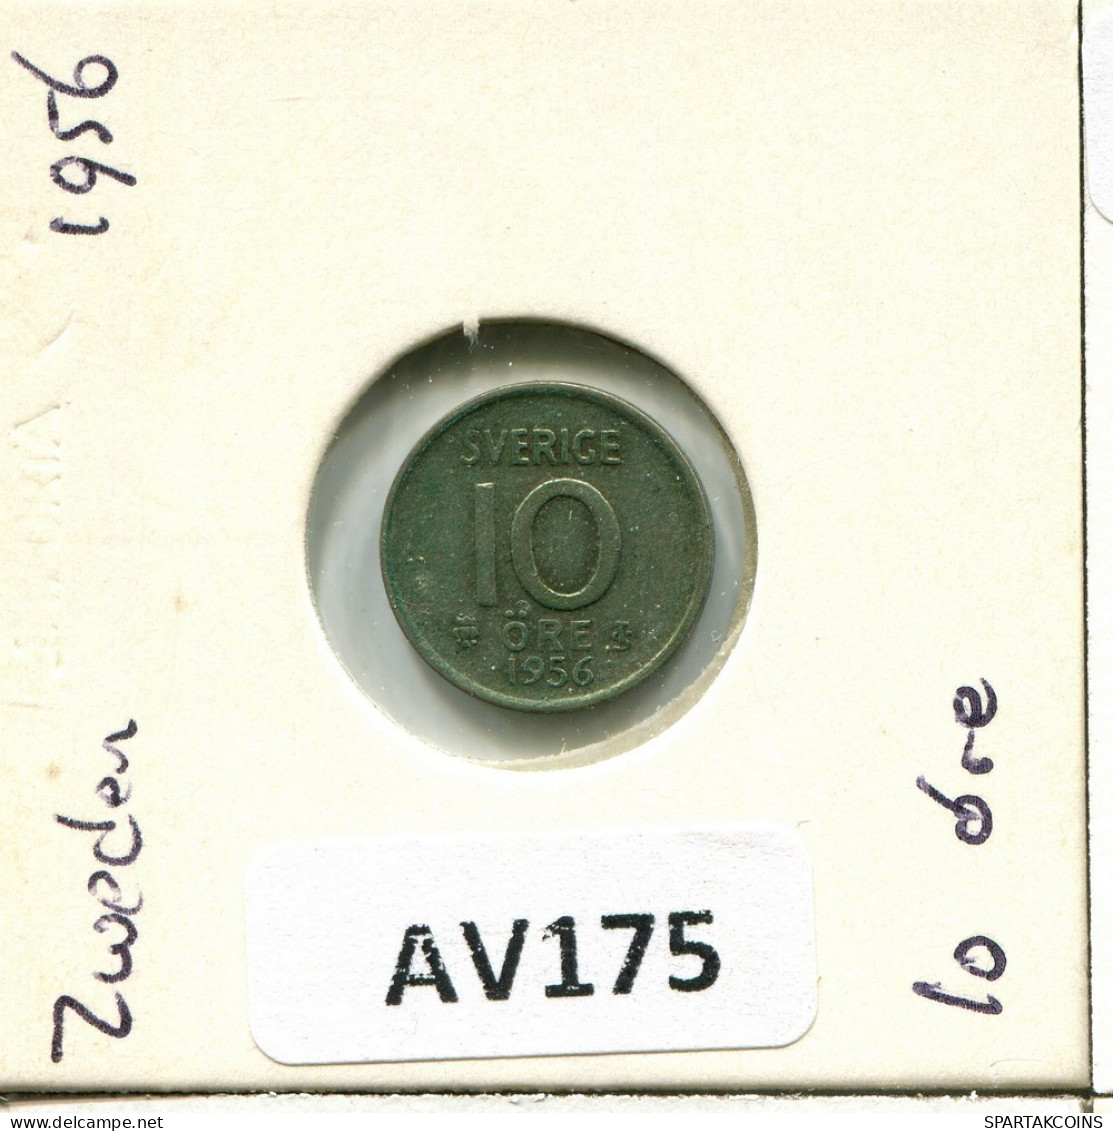 10 ORE 1956 SWEDEN Coin #AV175.U.A - Suecia